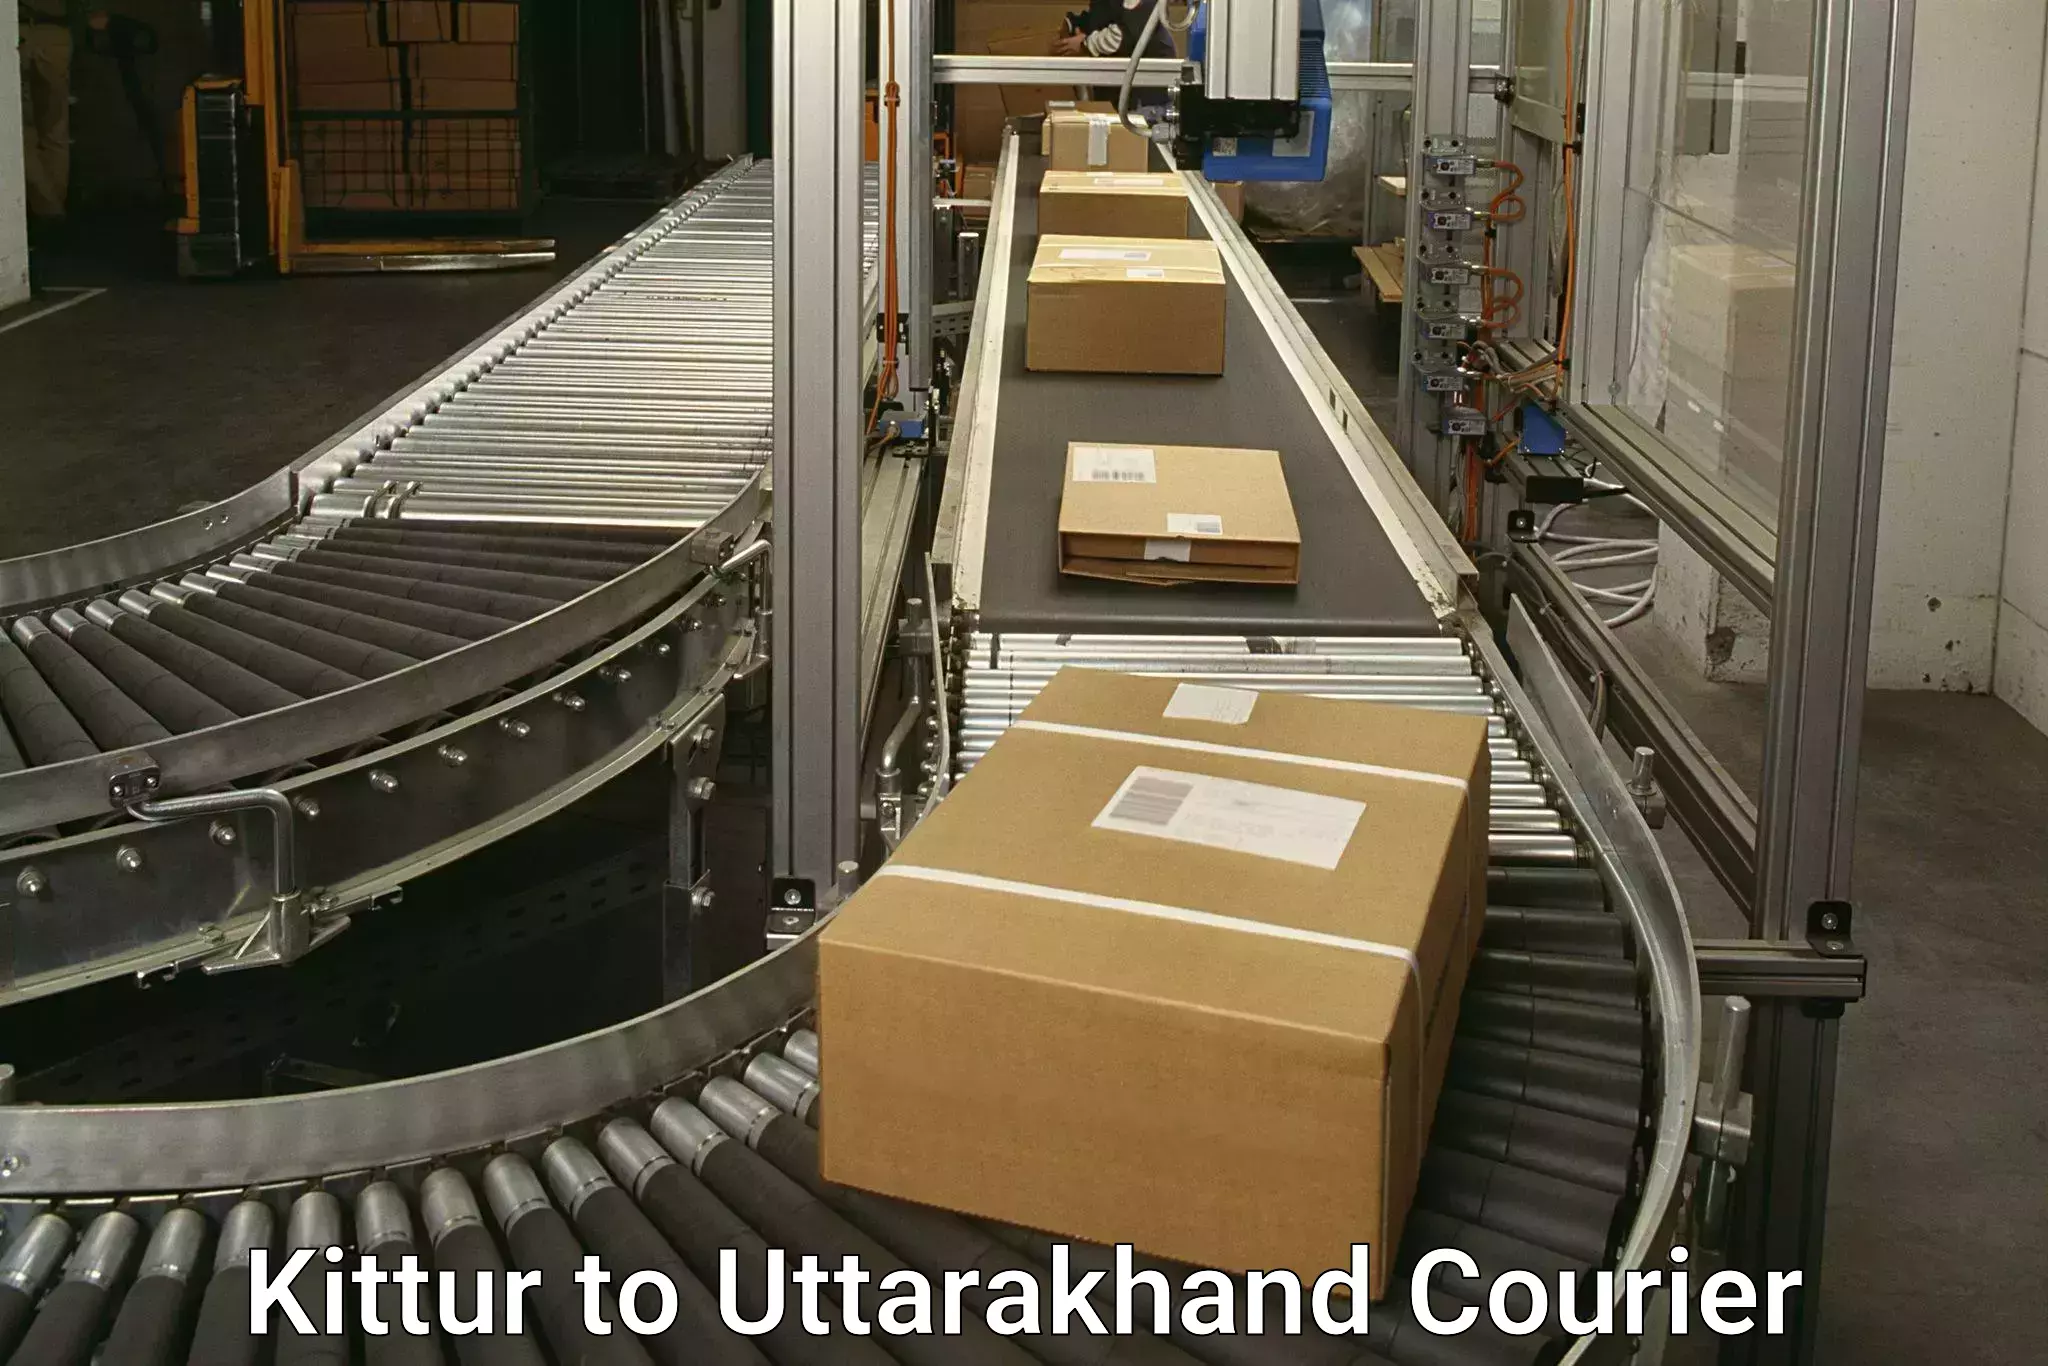 Multi-city courier Kittur to Uttarakhand